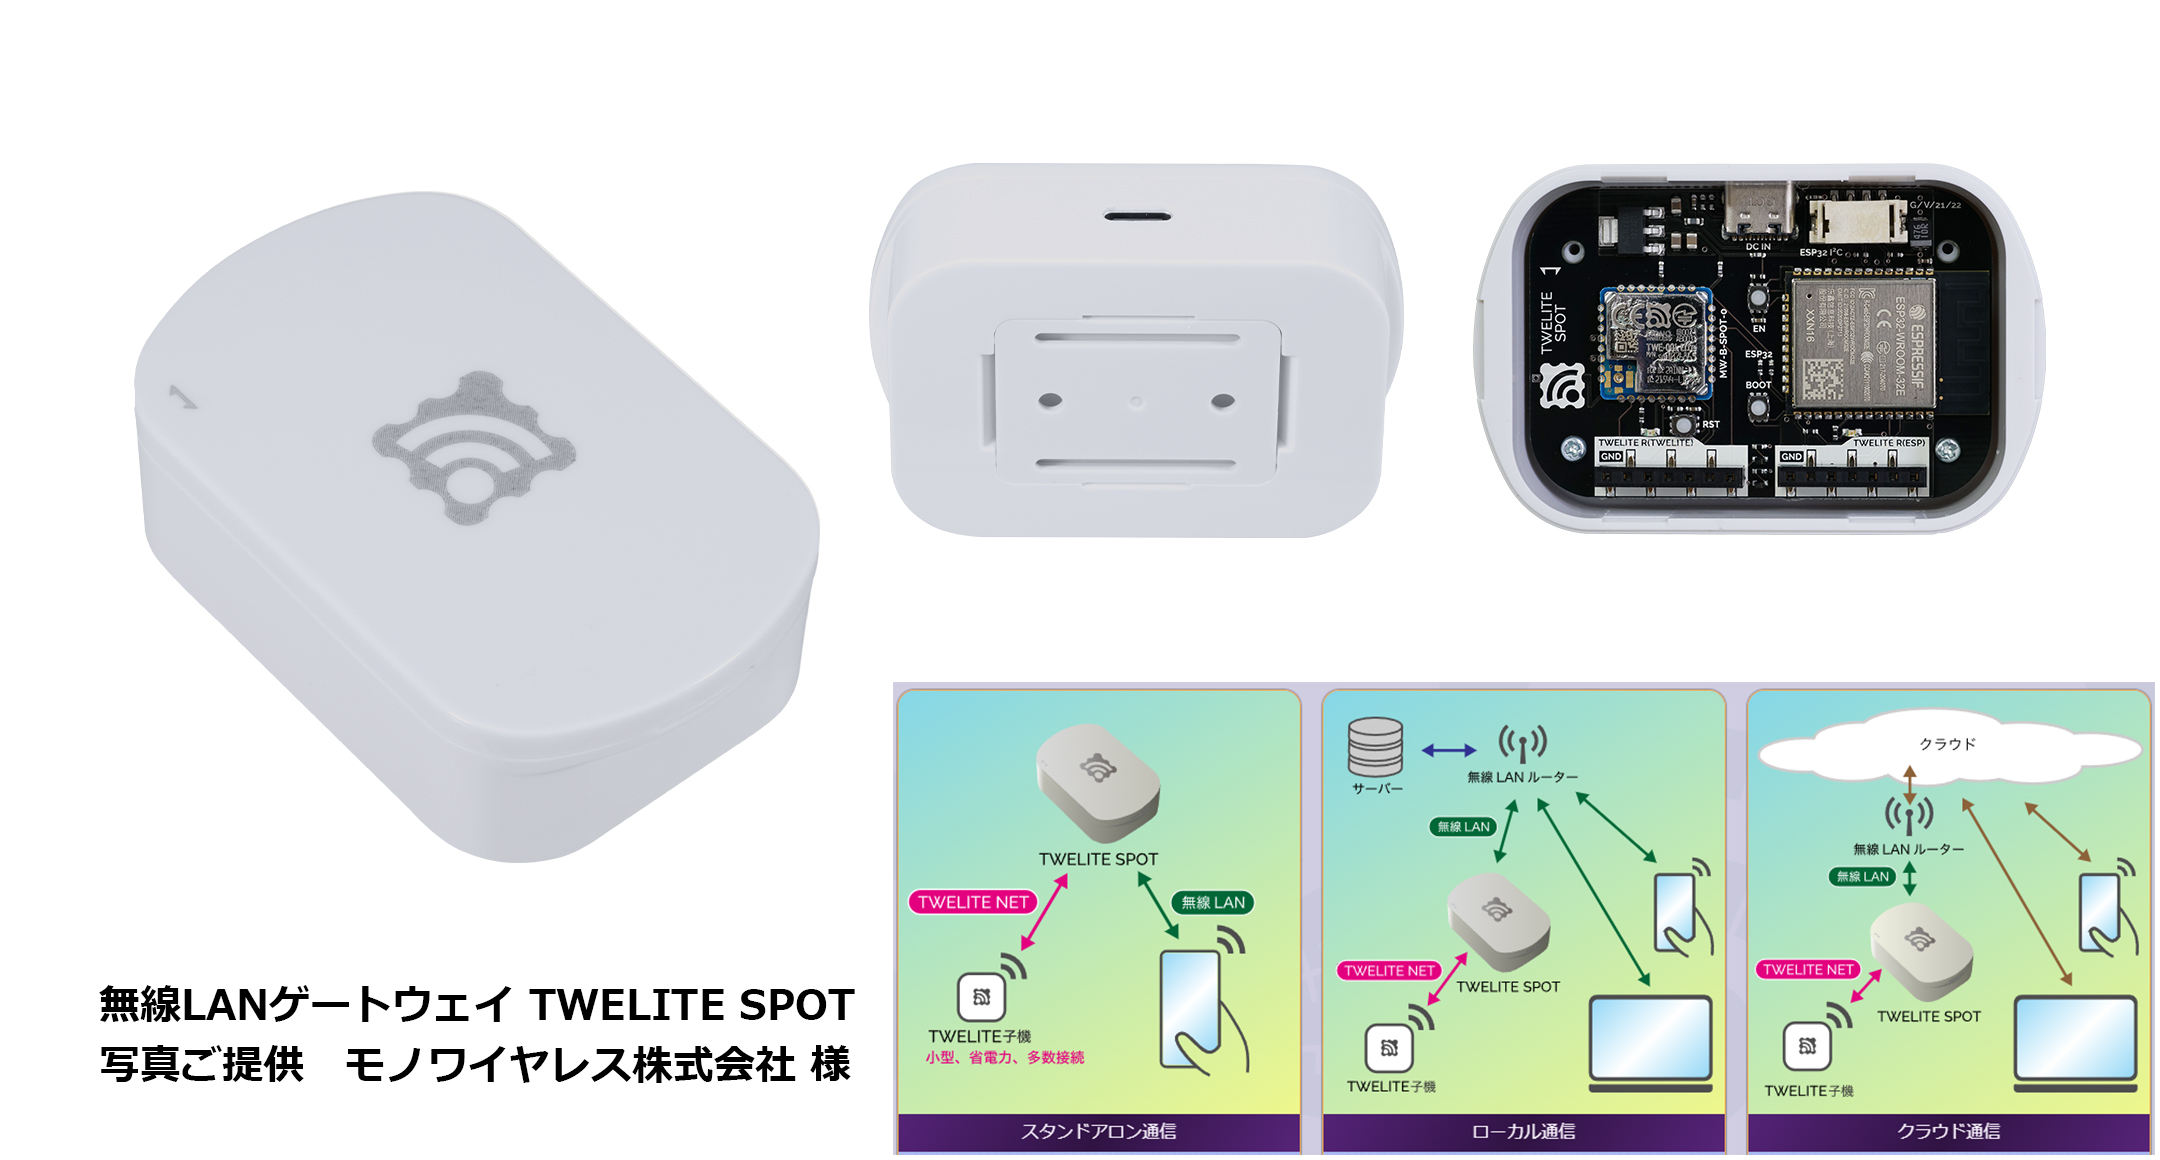 壁脱着型 小型IoTケース SIMシリーズの画像